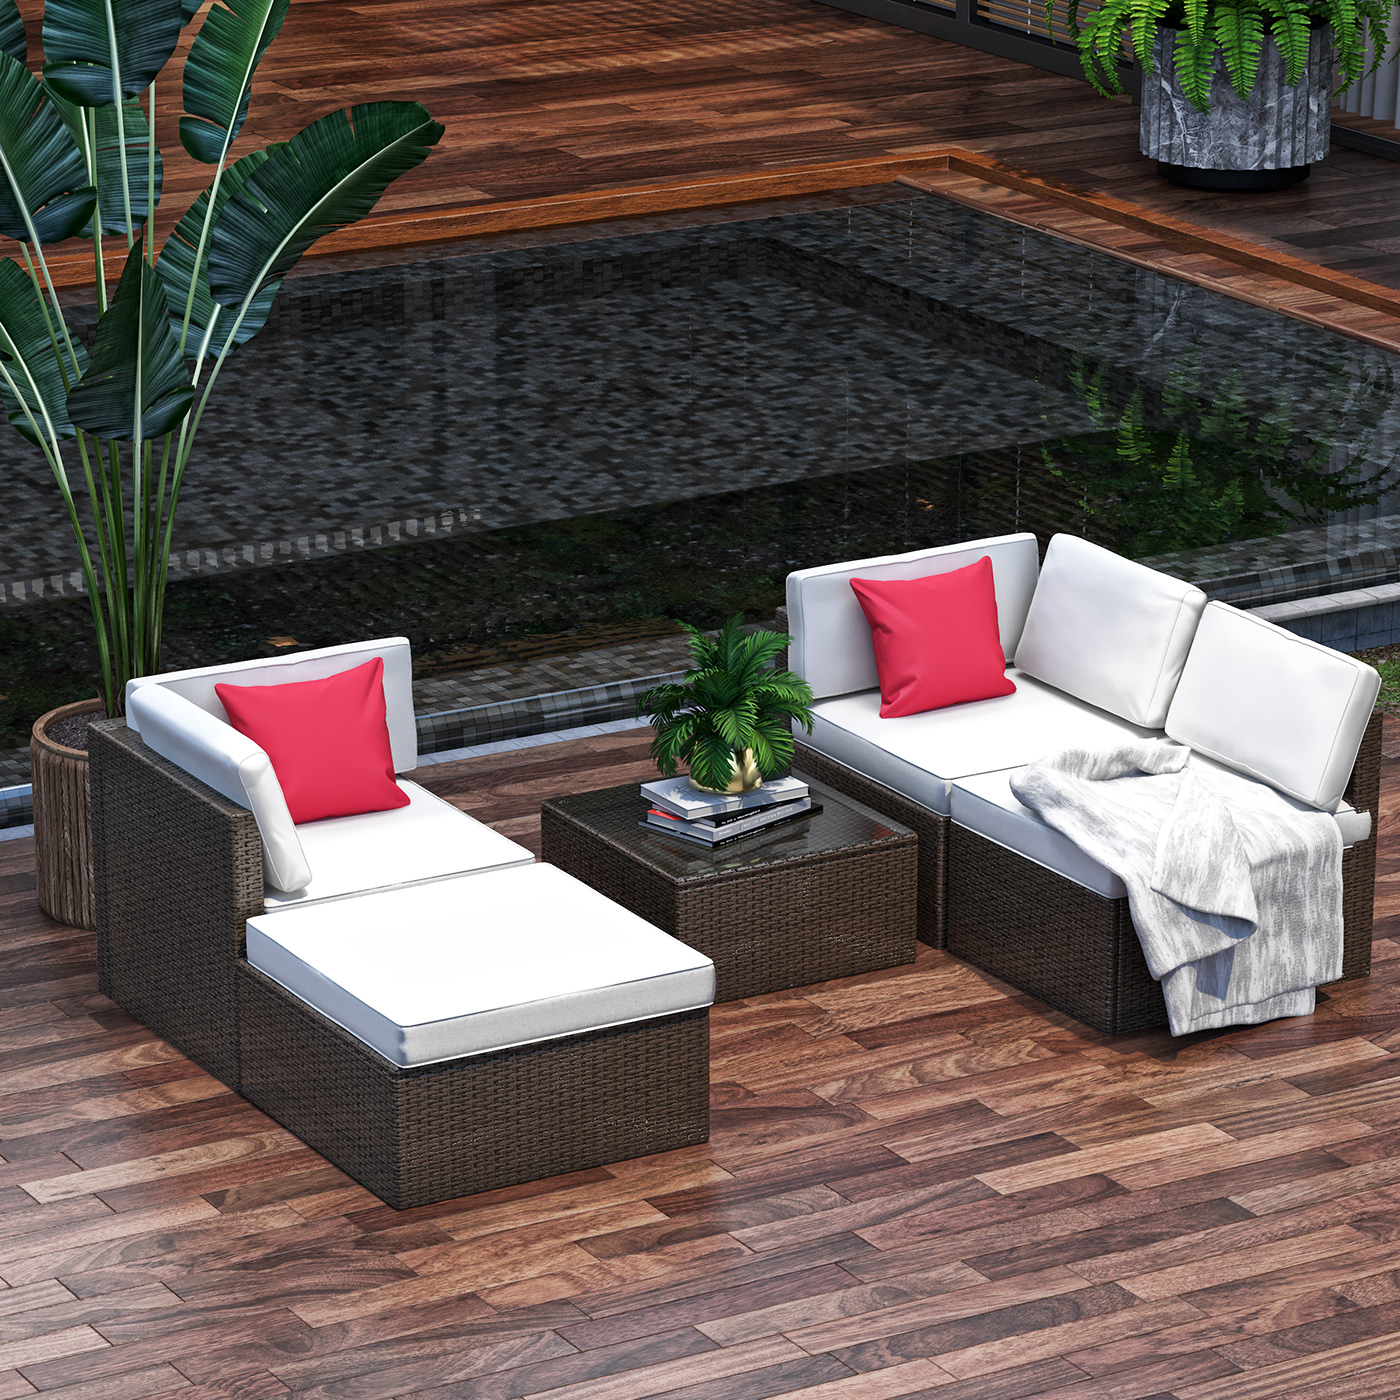 furniture interior design  visualization Render architecture 3D modern exterior archviz CGI